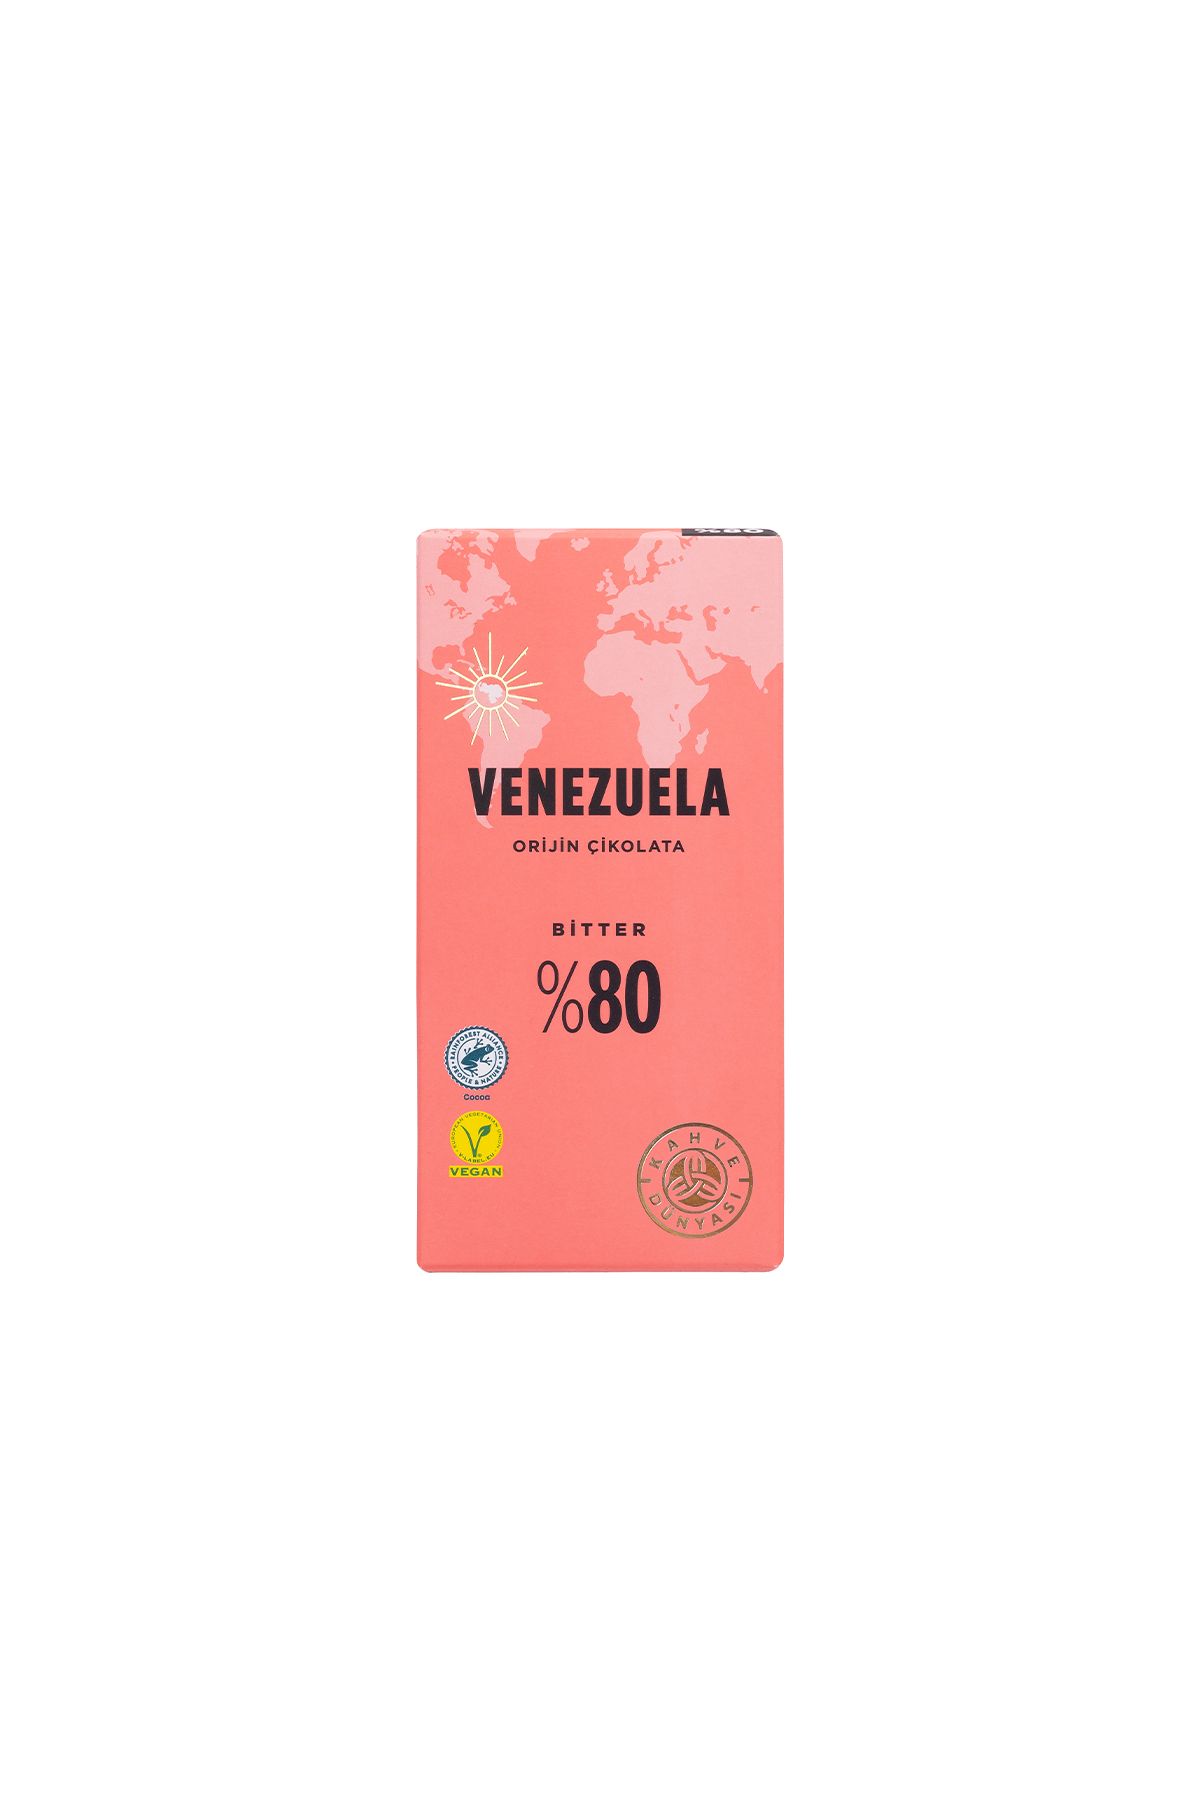 Kahve Dünyası El Yapımı Orijin Çikolata Venezuela